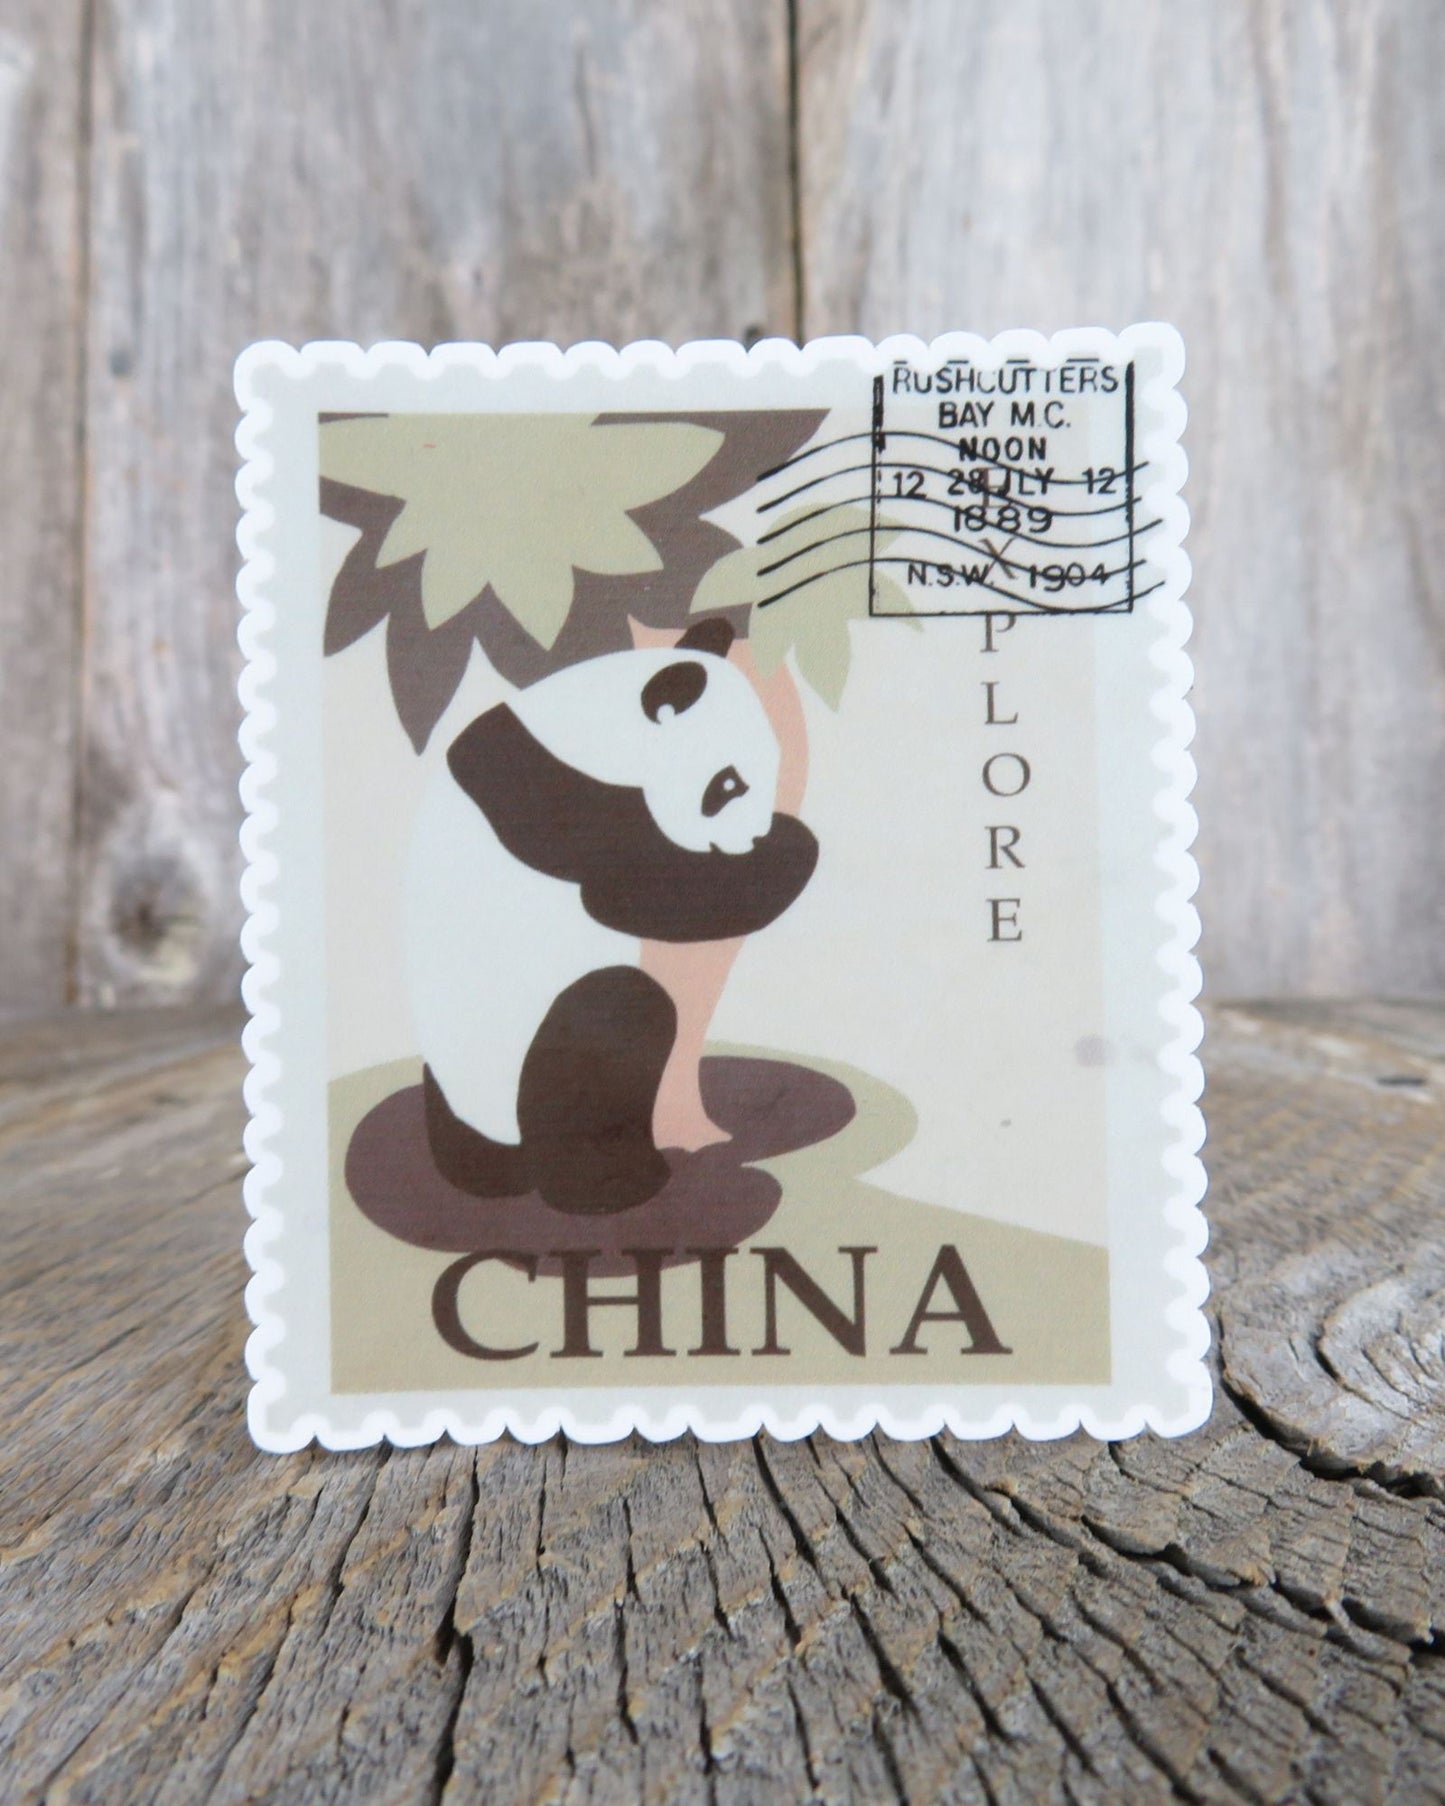 China Panda Bear Postage Stamp Sticker Waterproof Travel Souvenir Water Bottle Laptop